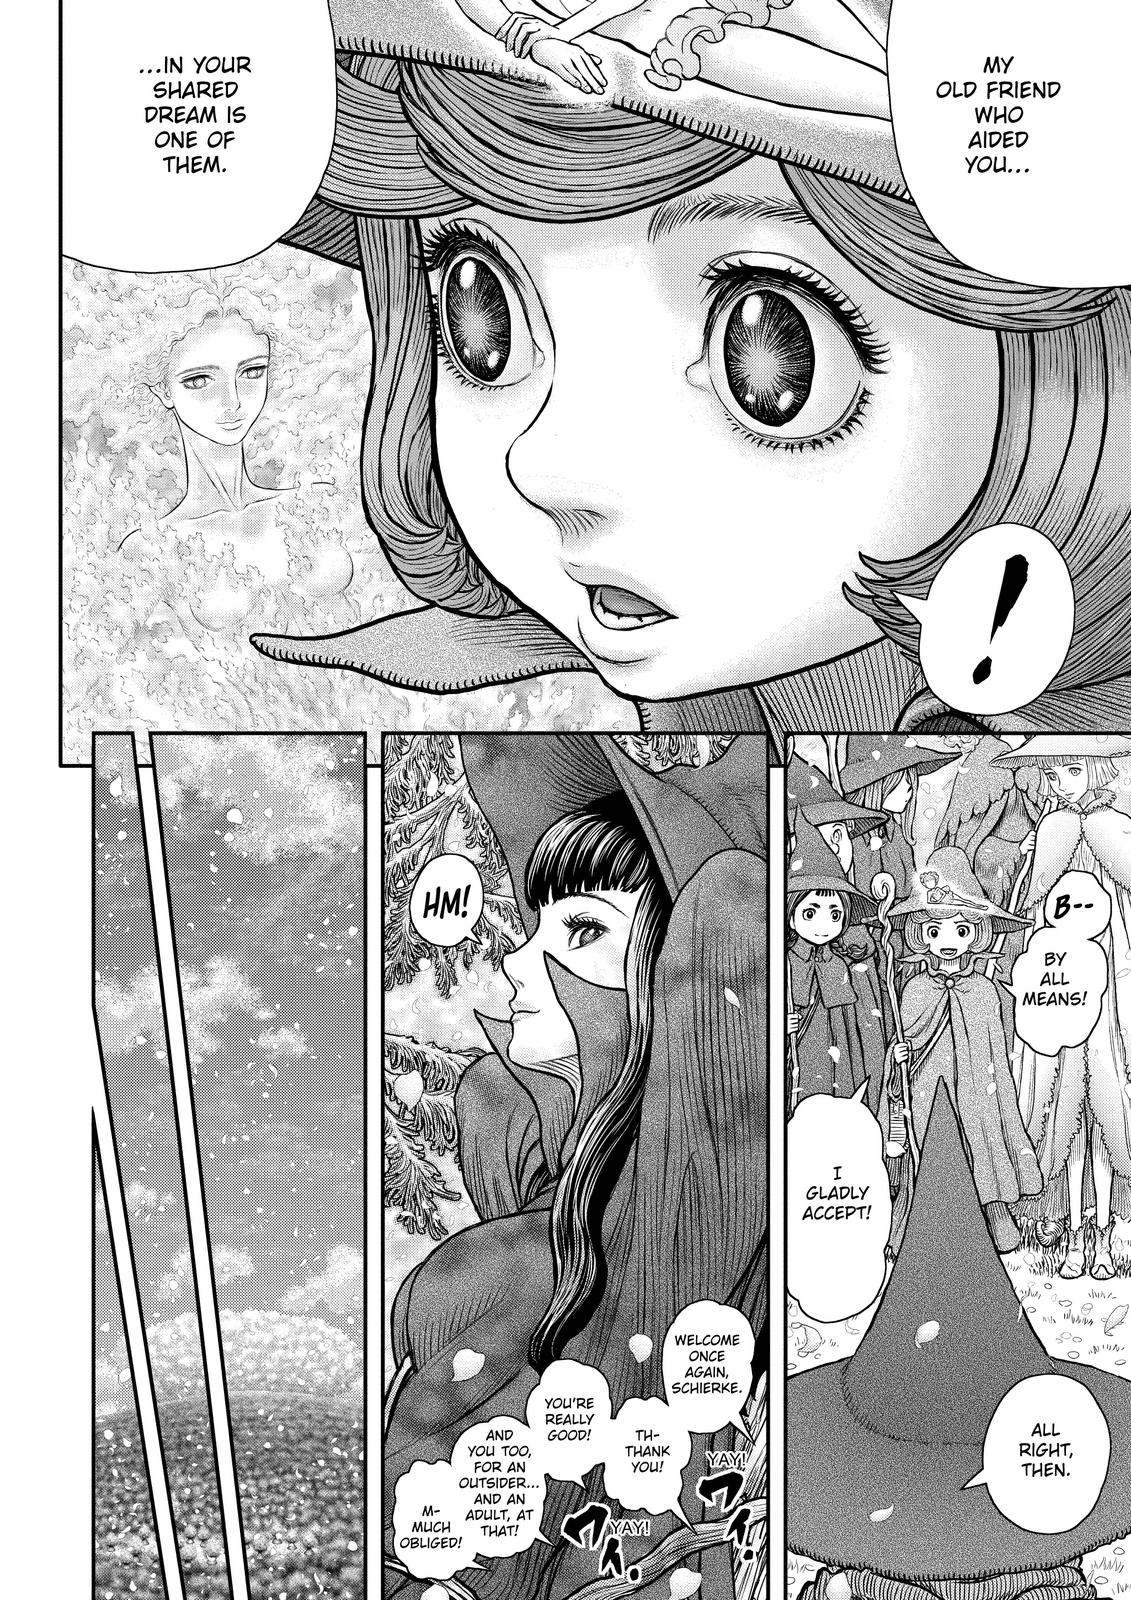 Berserk Manga Chapter 360 image 16